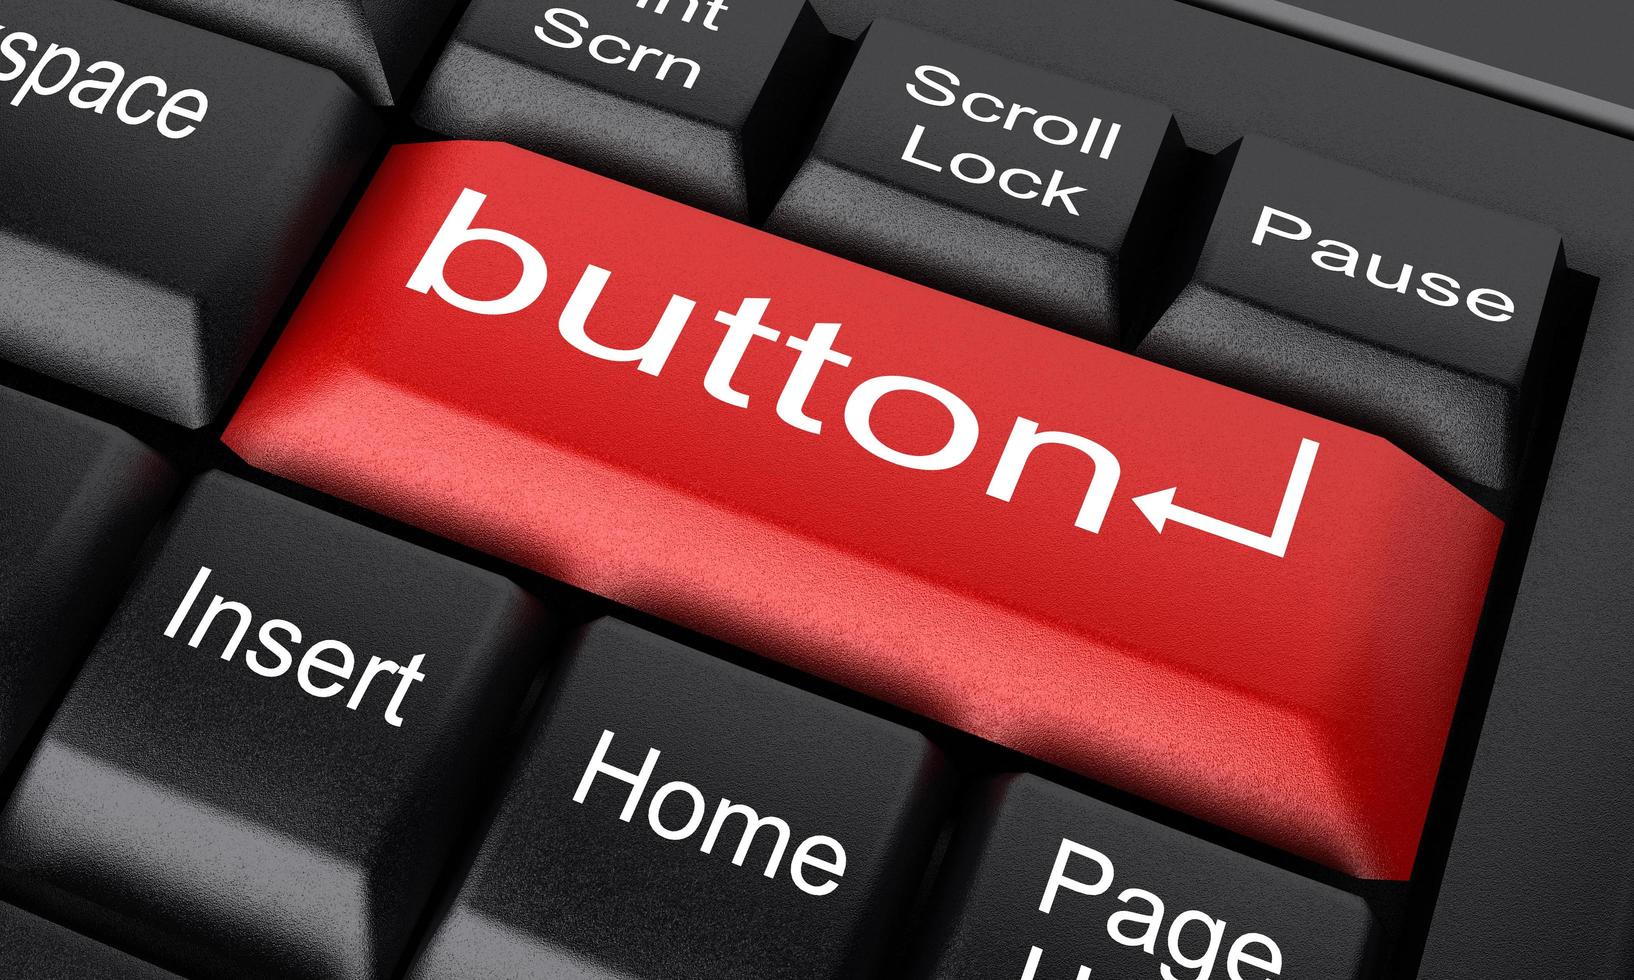 palabra de botón en el botón rojo del teclado foto